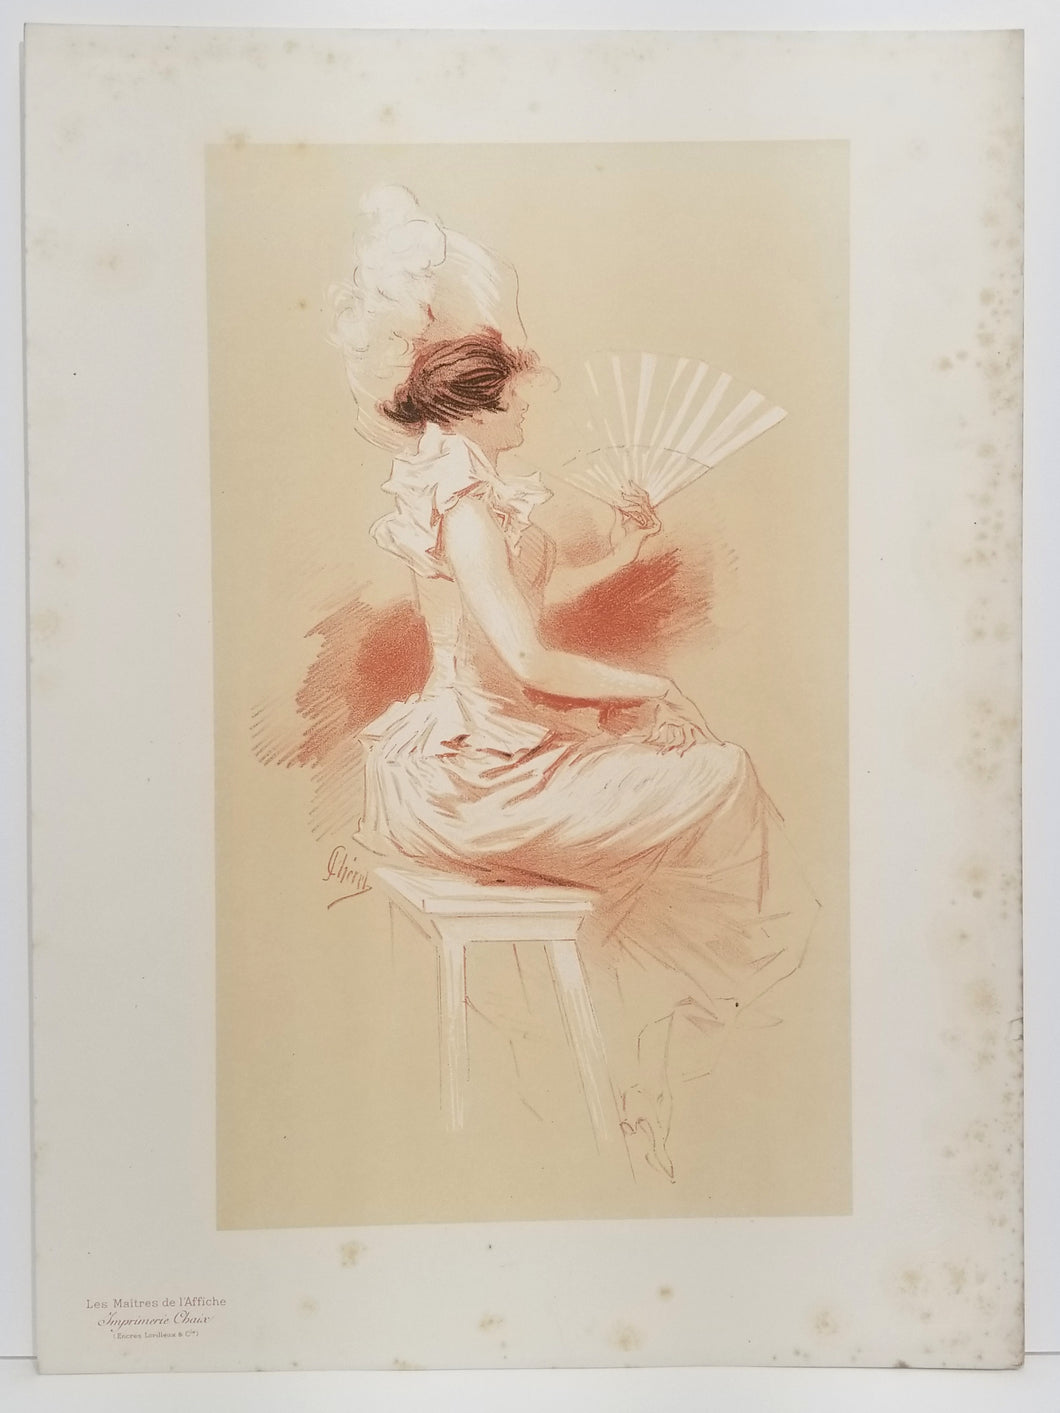 [Femme à l'éventail]. Sujet original par Chéret pour les Maîtres de l'affiche. 1896.